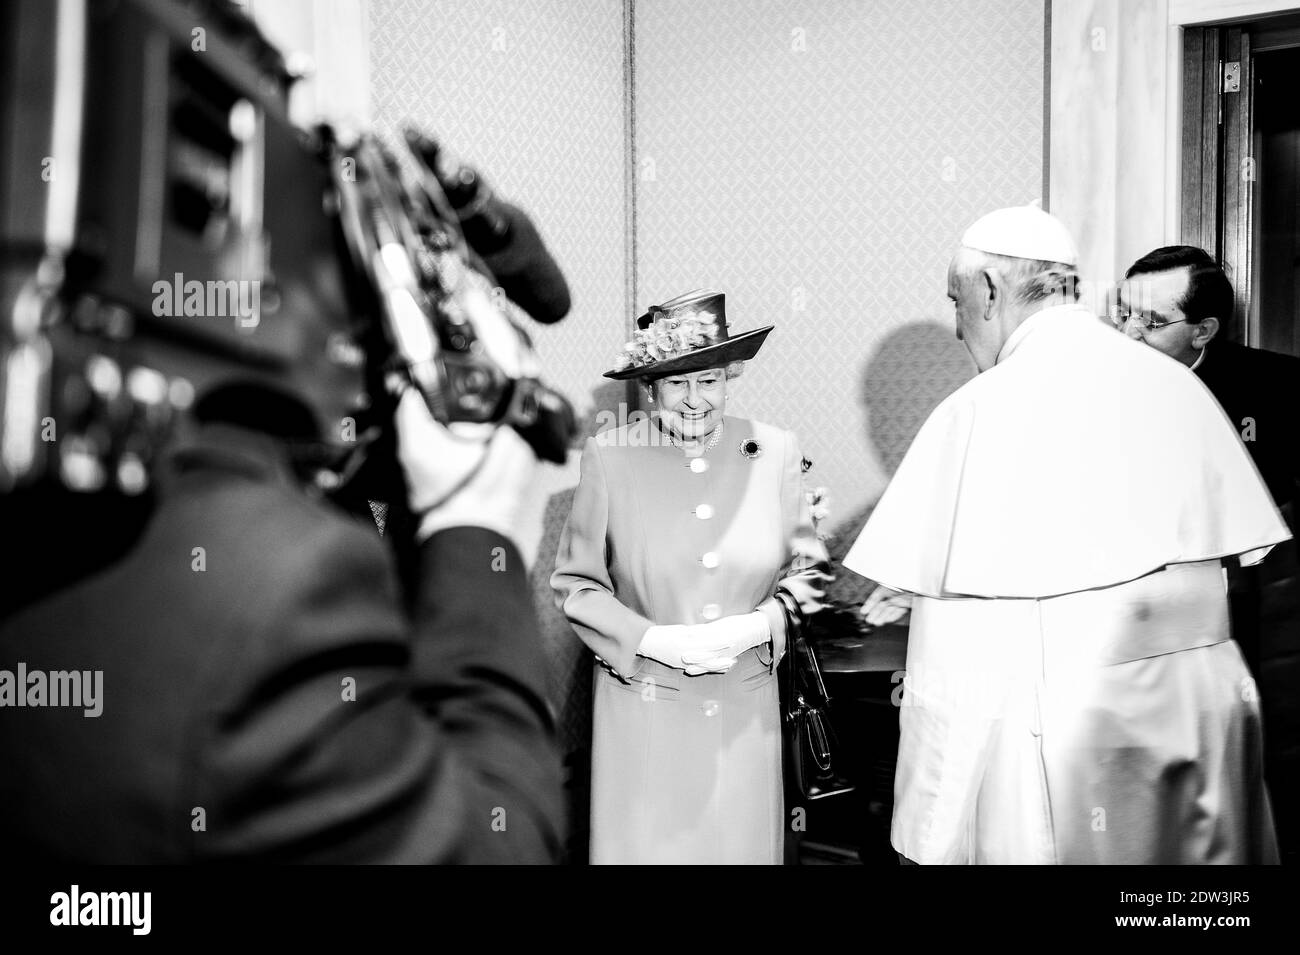 La reine Elizabeth II et son mari le prince Philip ont rencontré le pape François pour la première fois lors d'un auditoire privé dans une salle à côté de l'auditorium Paul VI au Vatican le 3 avril 2014. Photo par ABACAPRESS.COM Banque D'Images